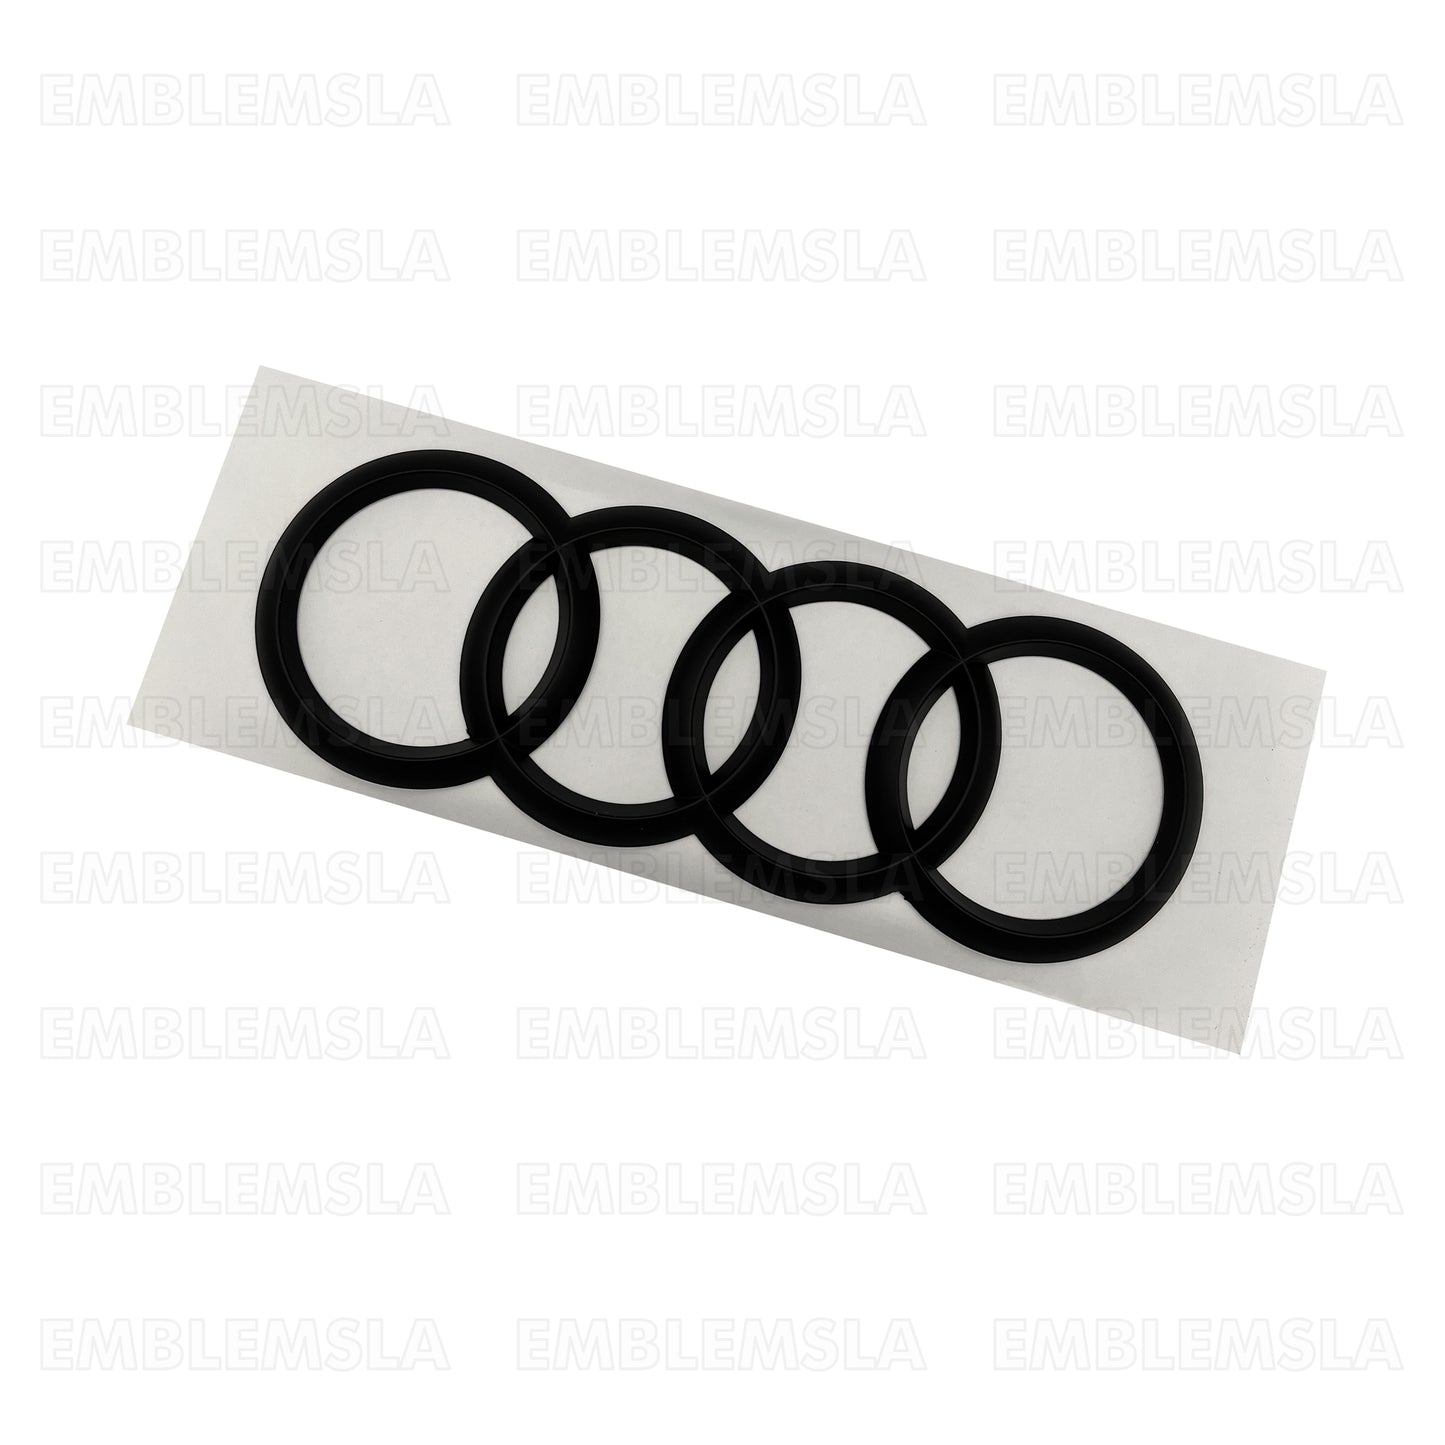 Audi Matte Black Front Grill Rings Emblem Badge Q5 Q3 Q7 A6 A7 285mm